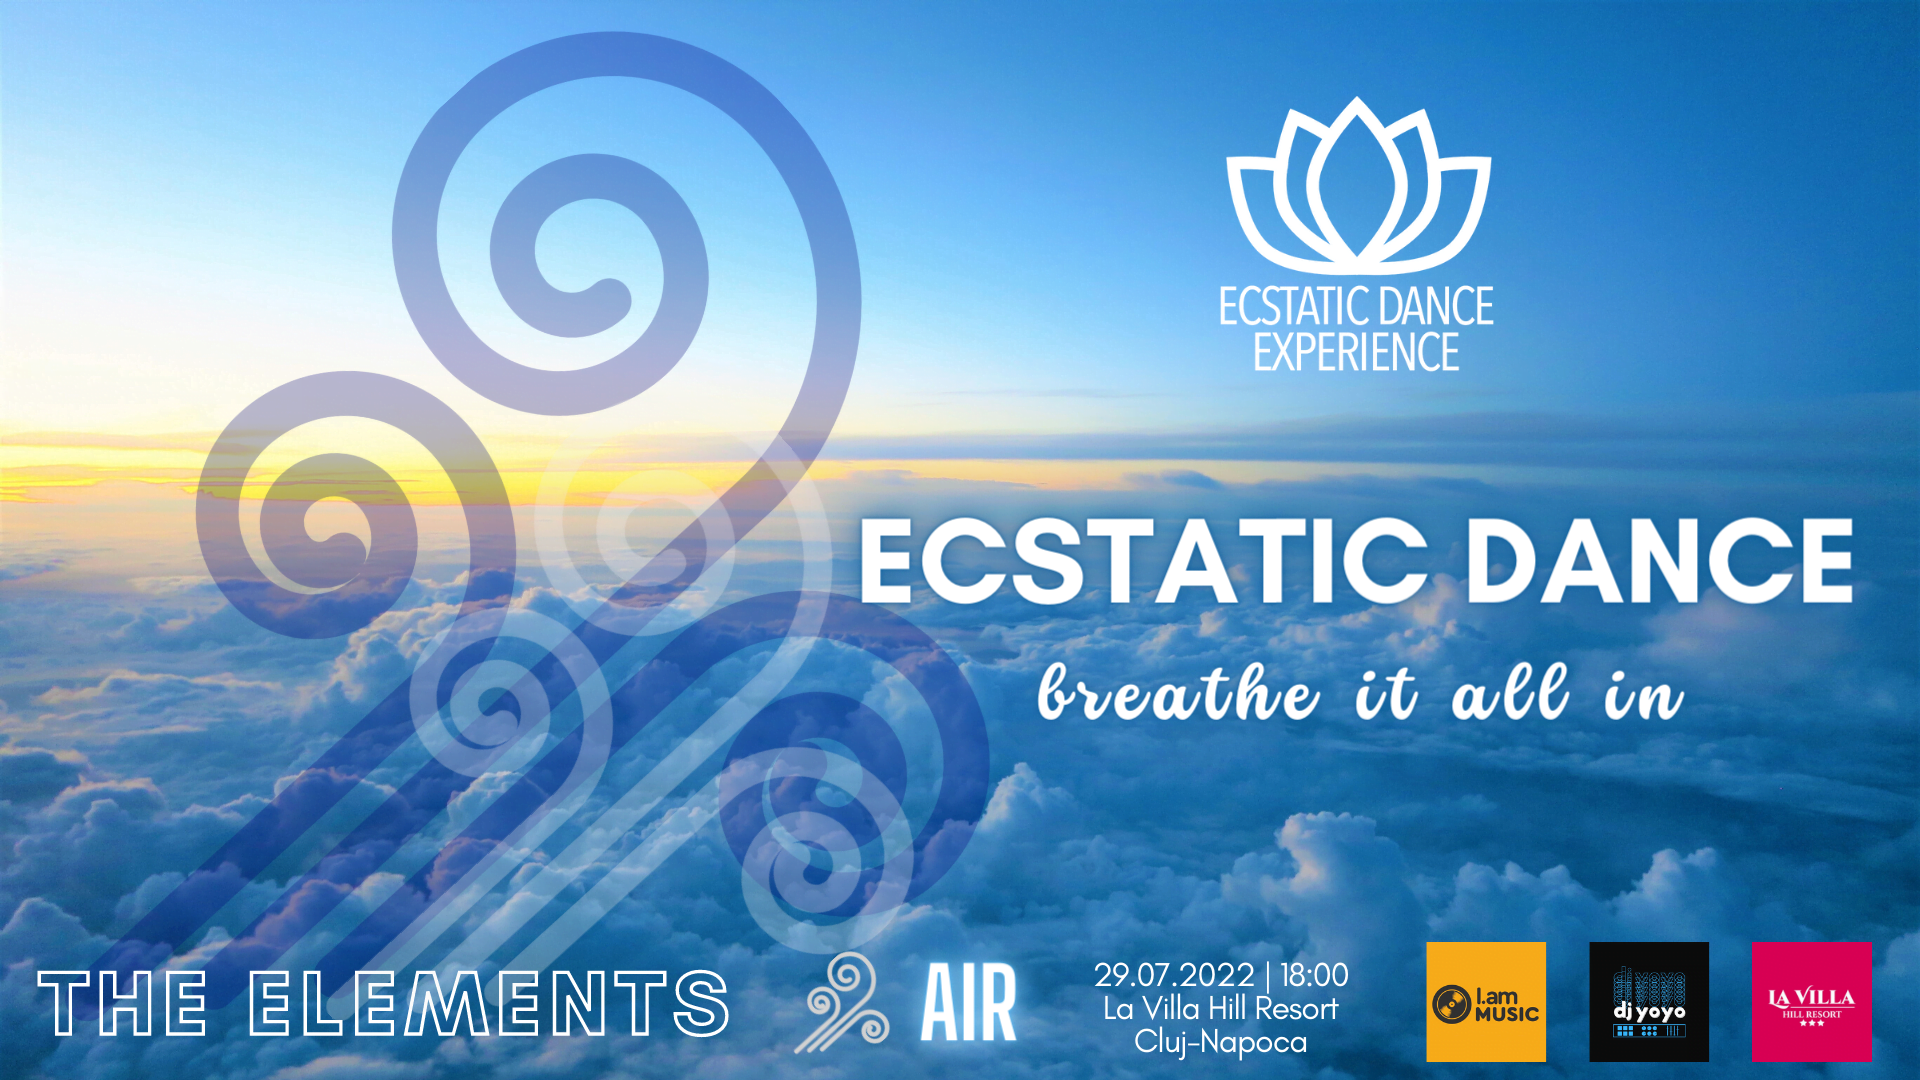 Colectivul Ecstatic Dance Experience organizează în Cluj, pe data de 29 iulie 2022, al doilea eveniment din seria Ecstatic Dance - The Elements | Fire | Air | Earth | Water